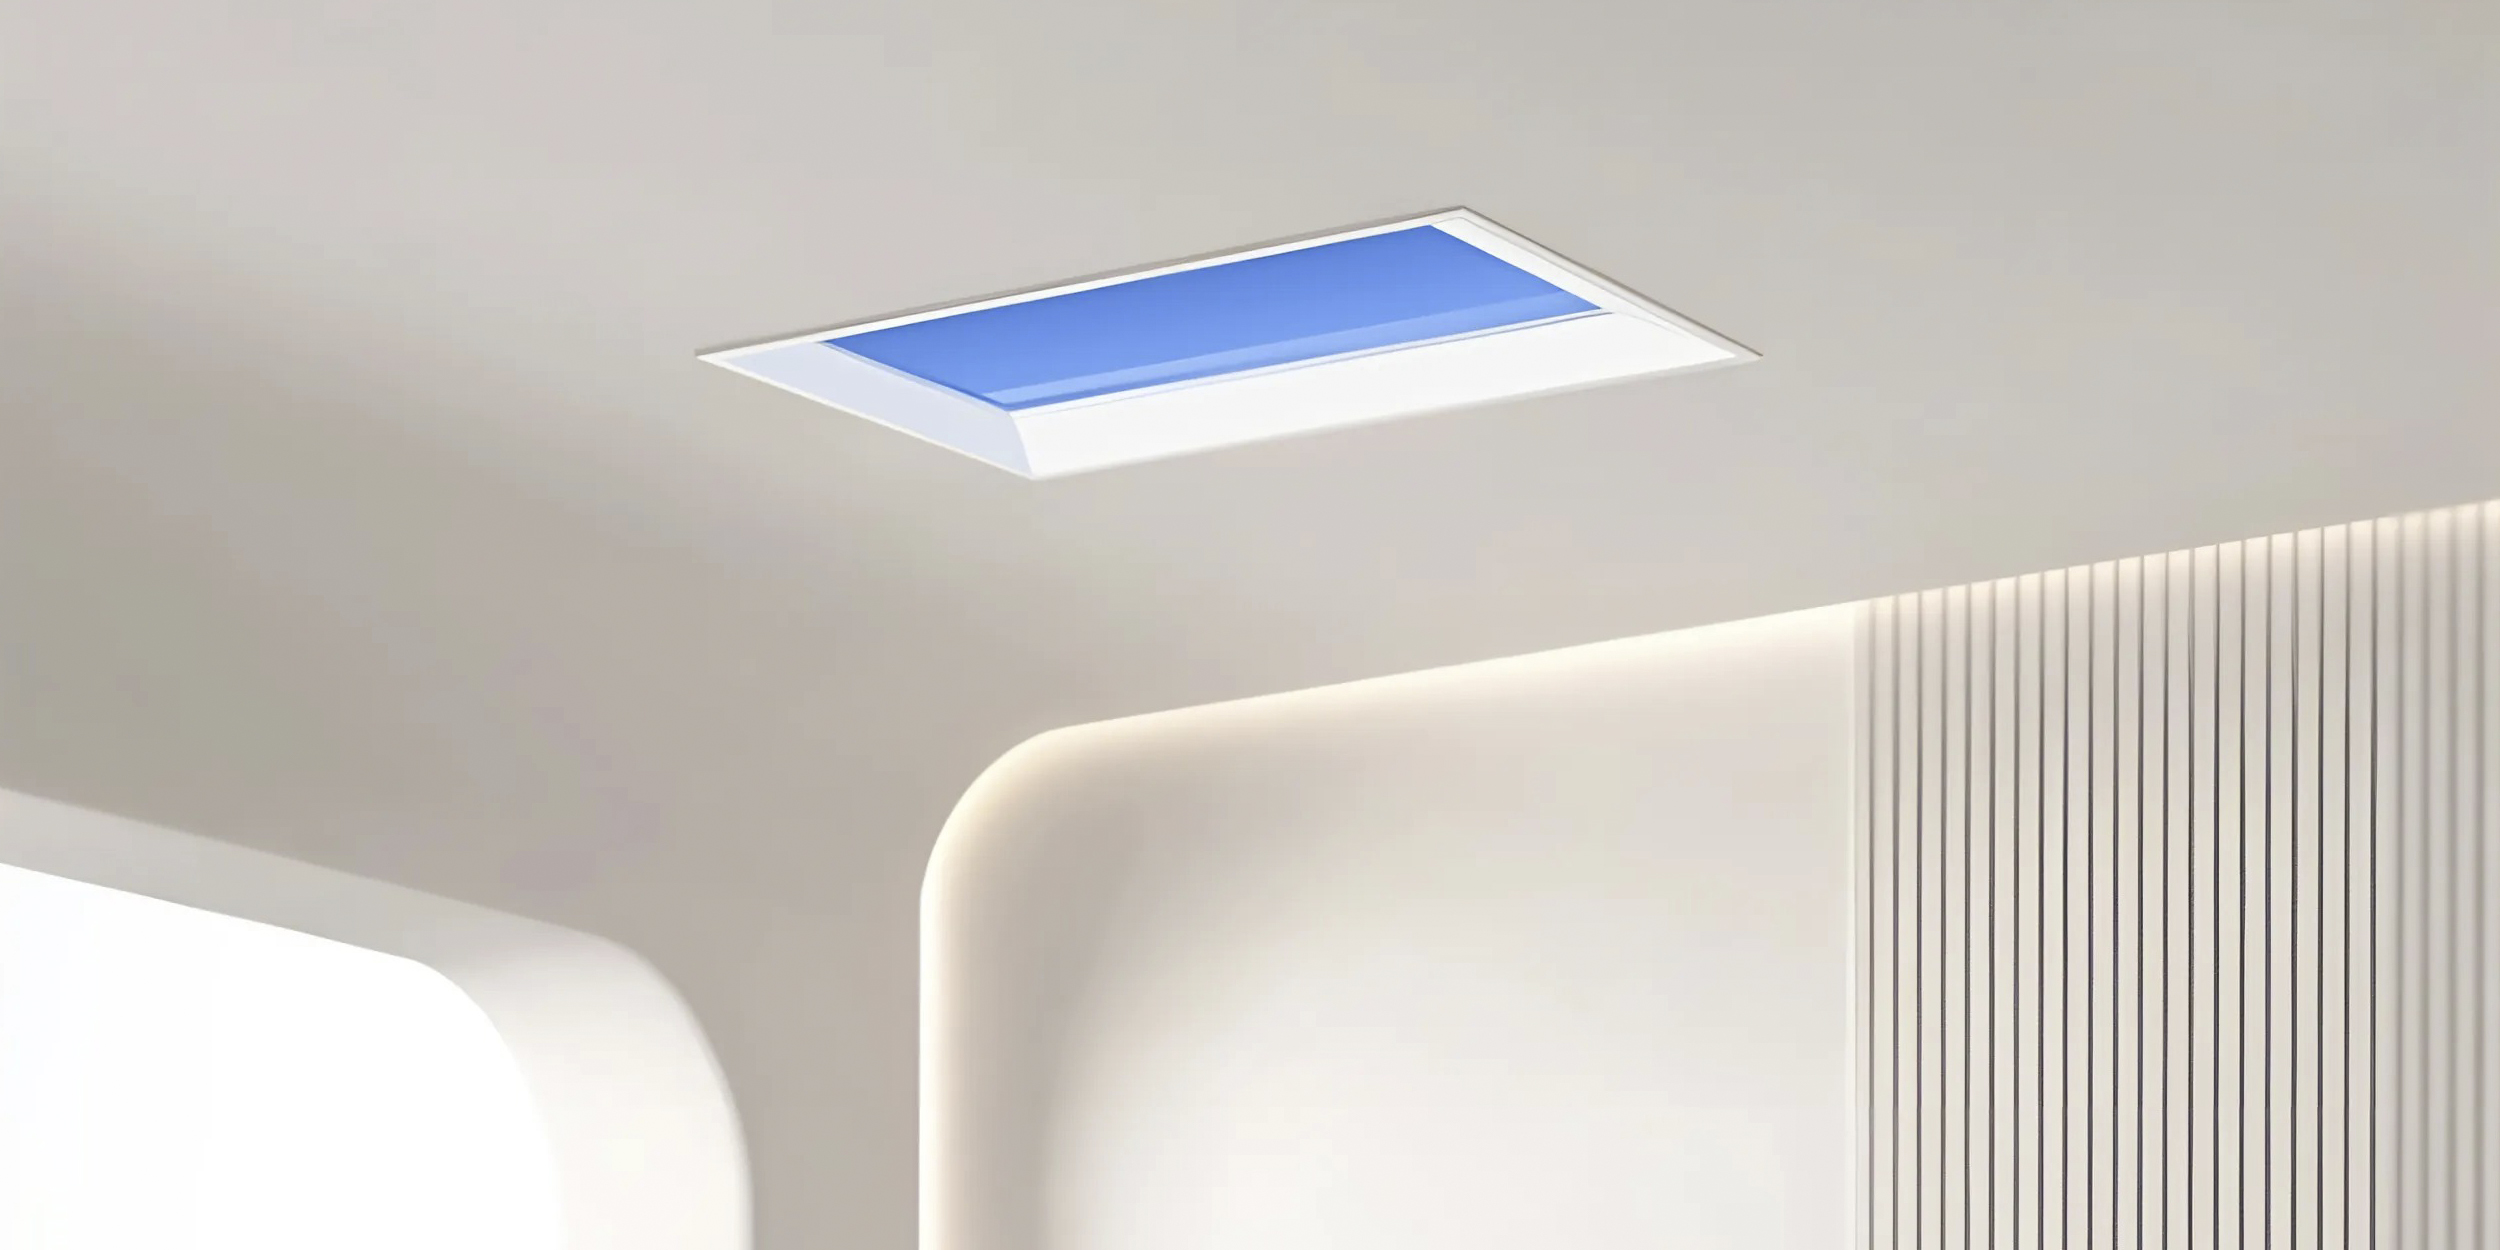 Xiaomi представила потолочный светильник, имитирующий окно и голубое небо